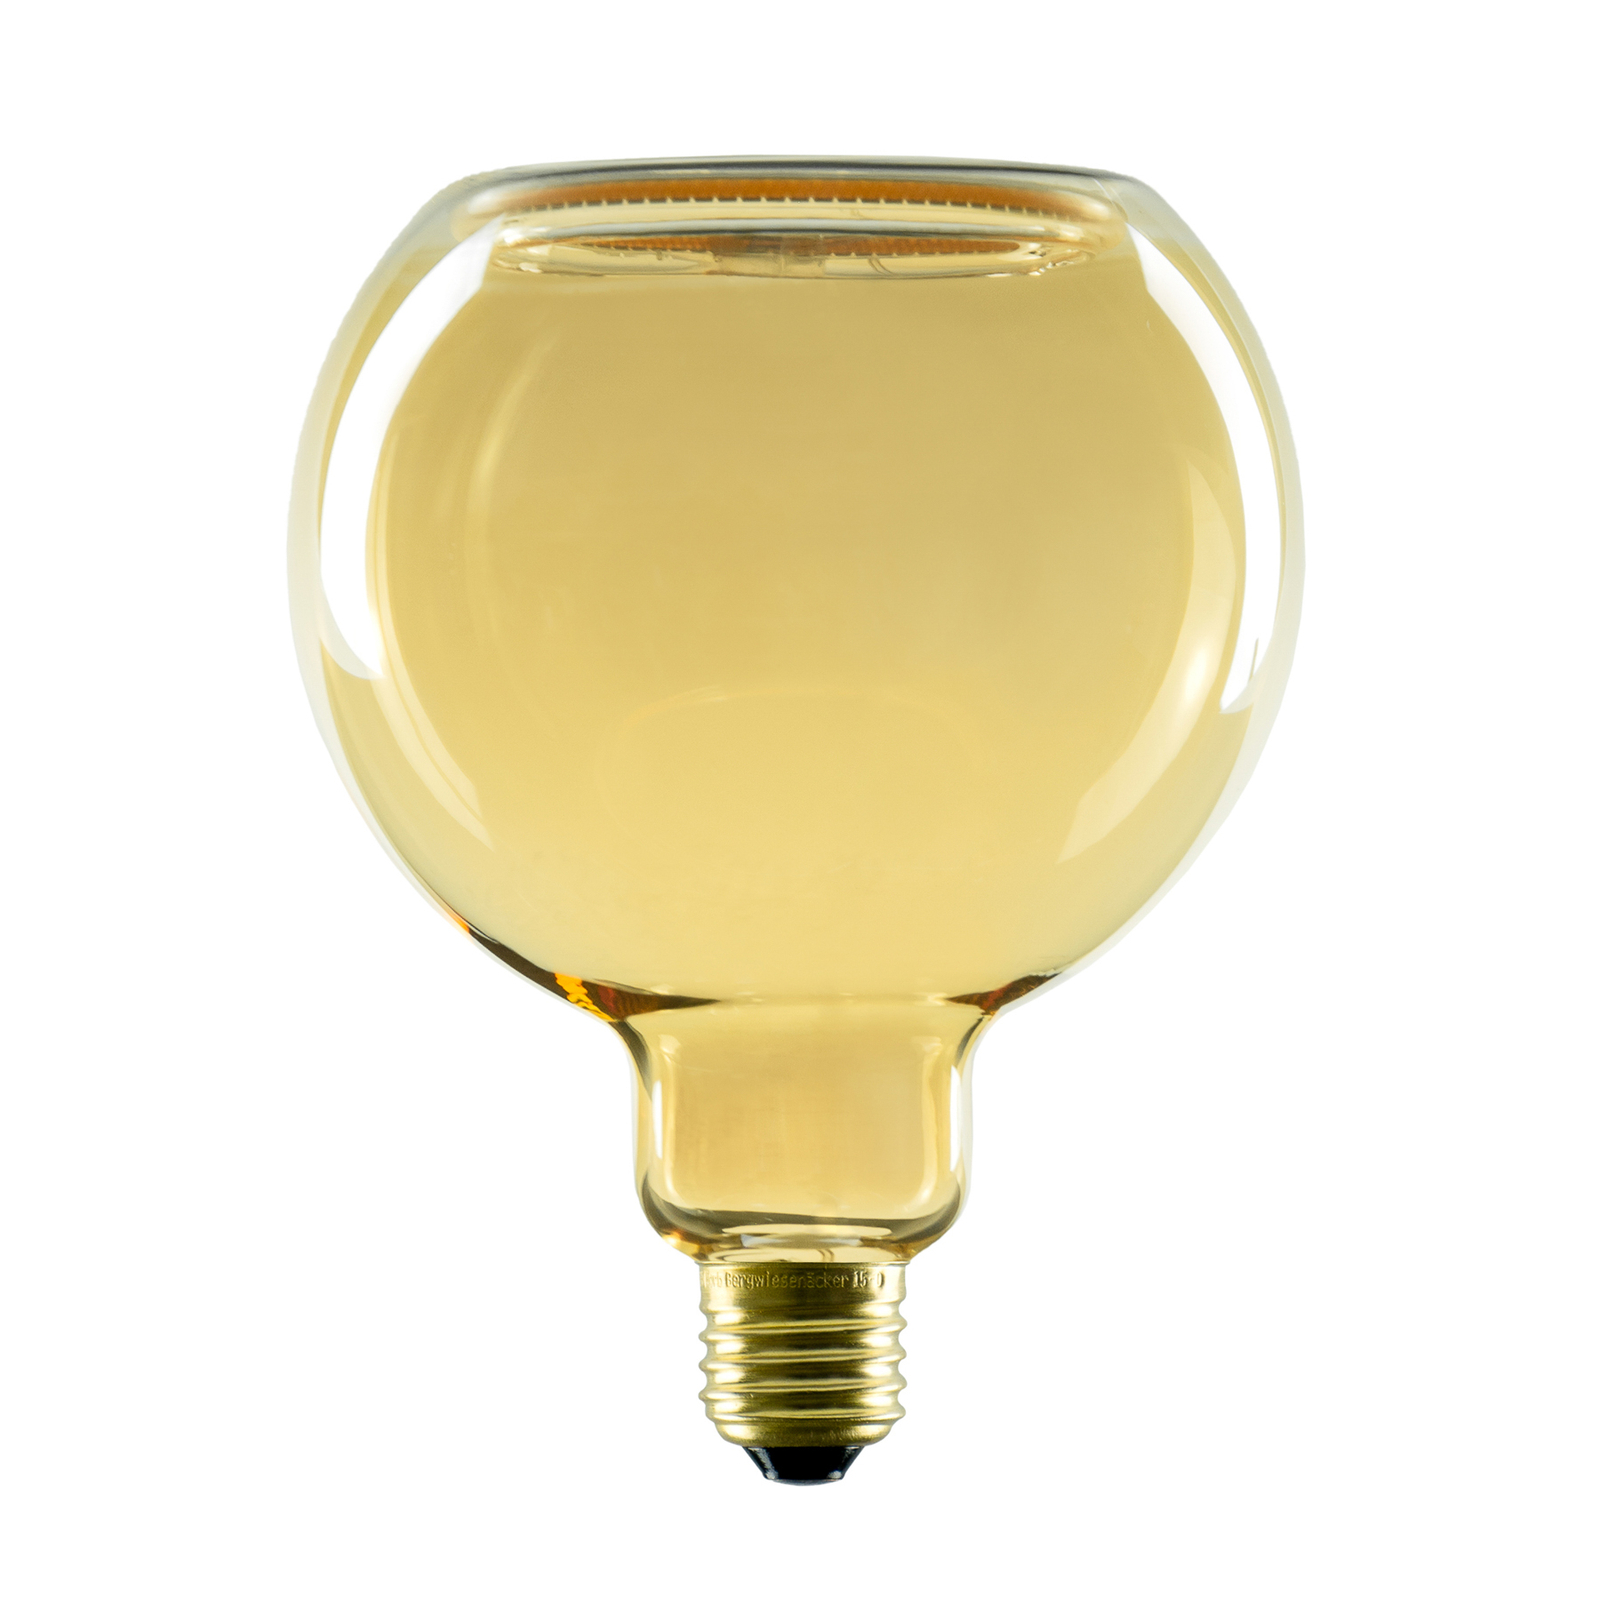 SEGULA LED floating globe G125 E27 4W goud 922 dim